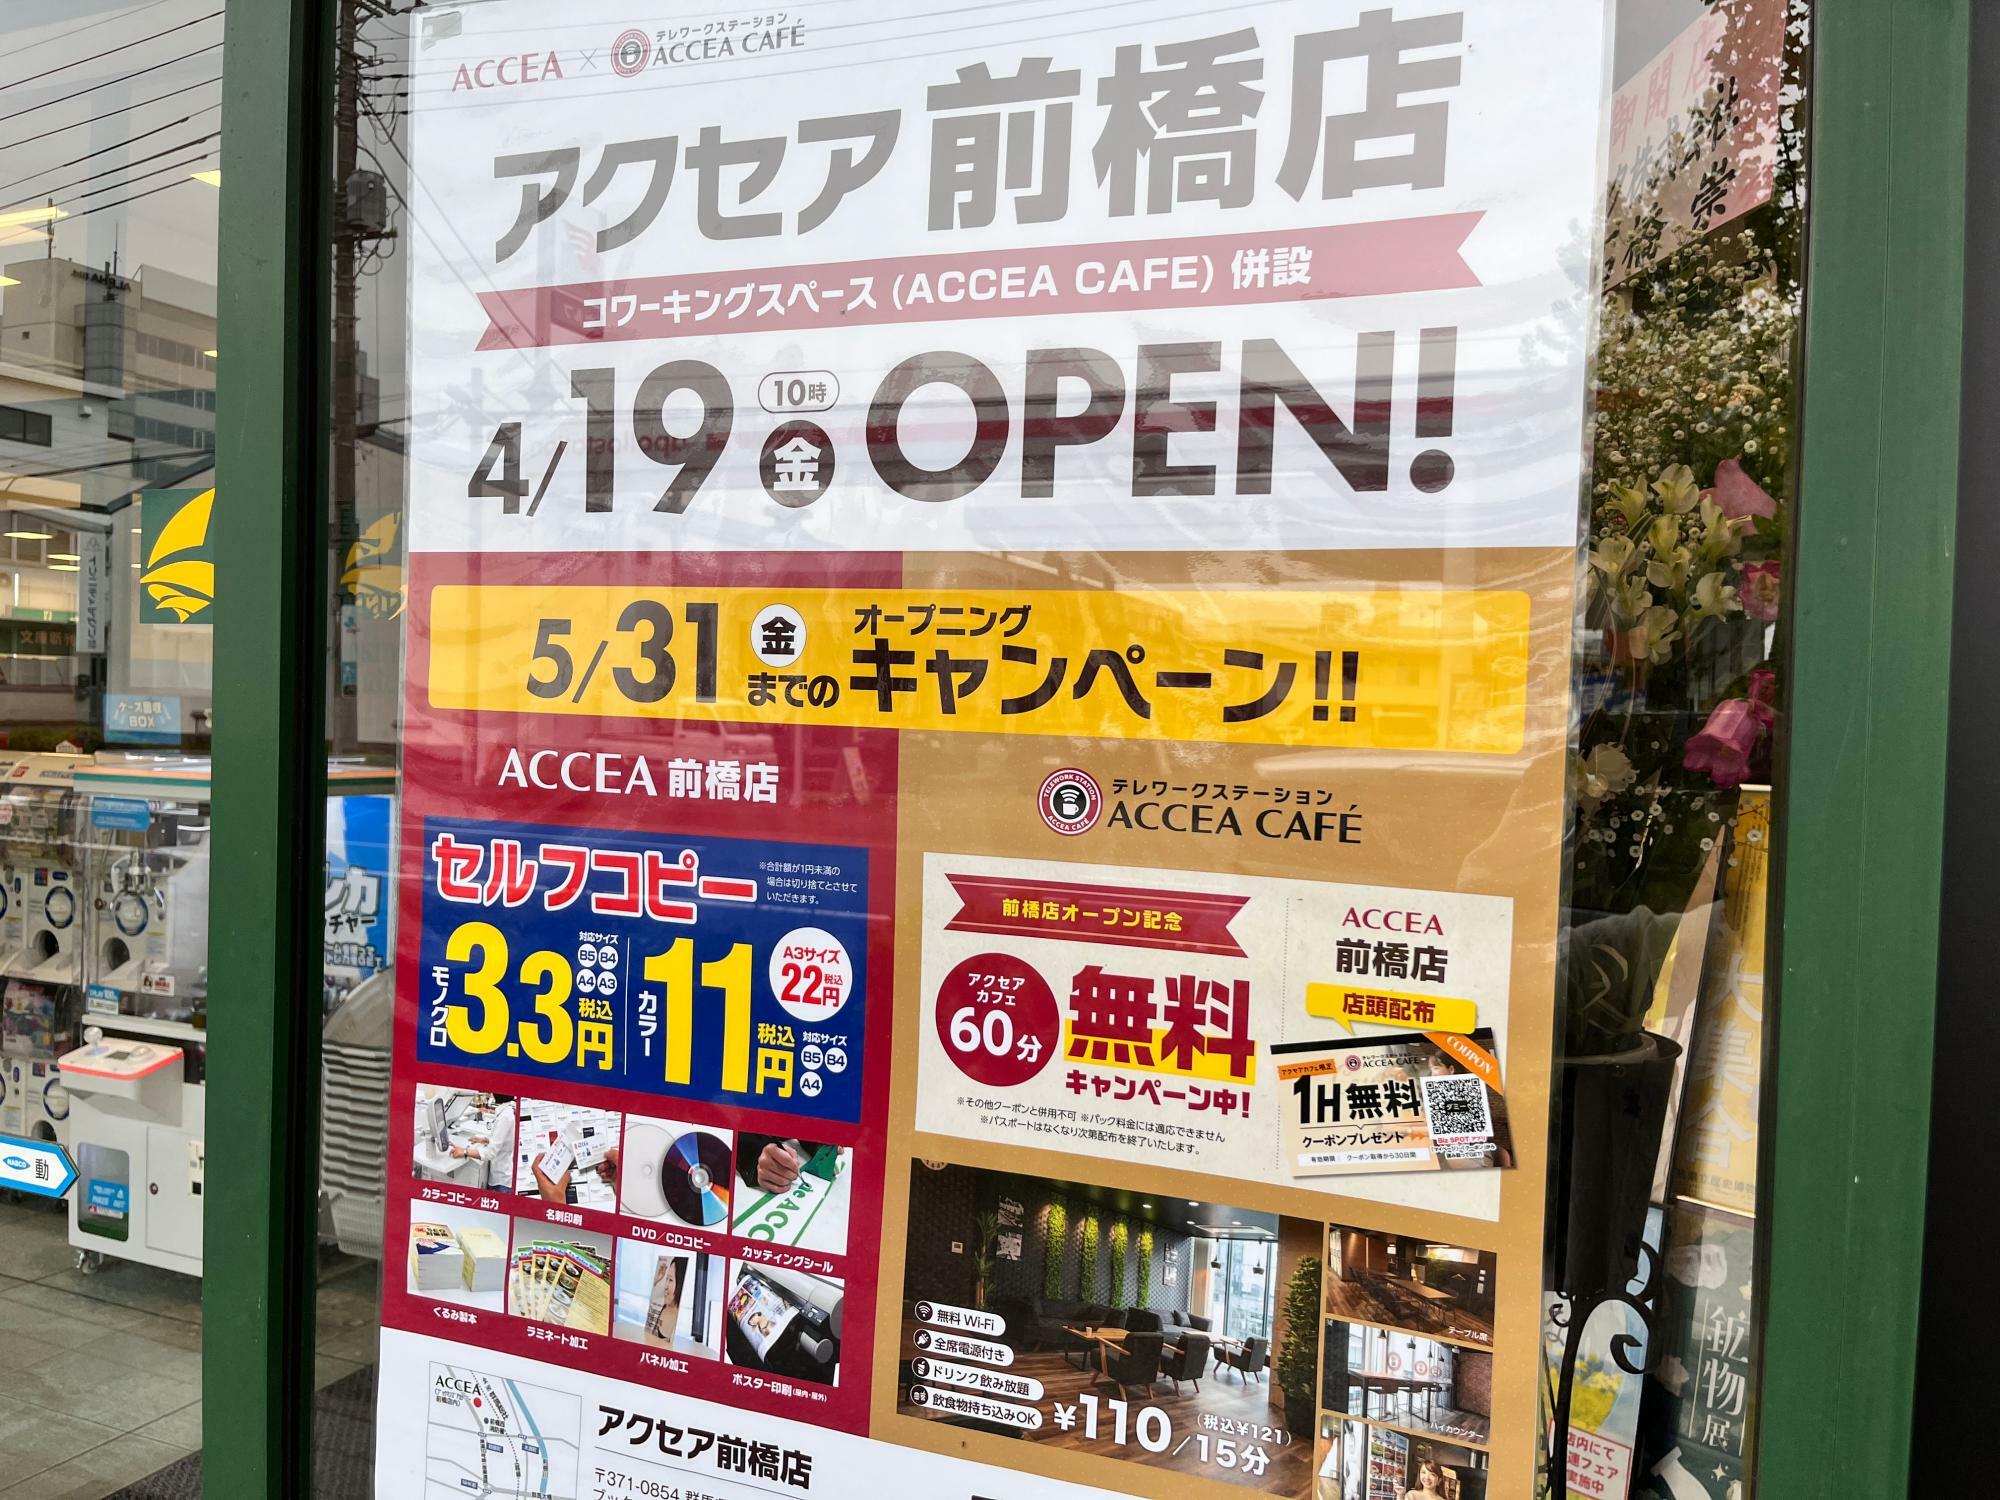 「アクセア前橋店」と「アクセアカフェ」オープン告知のポスター